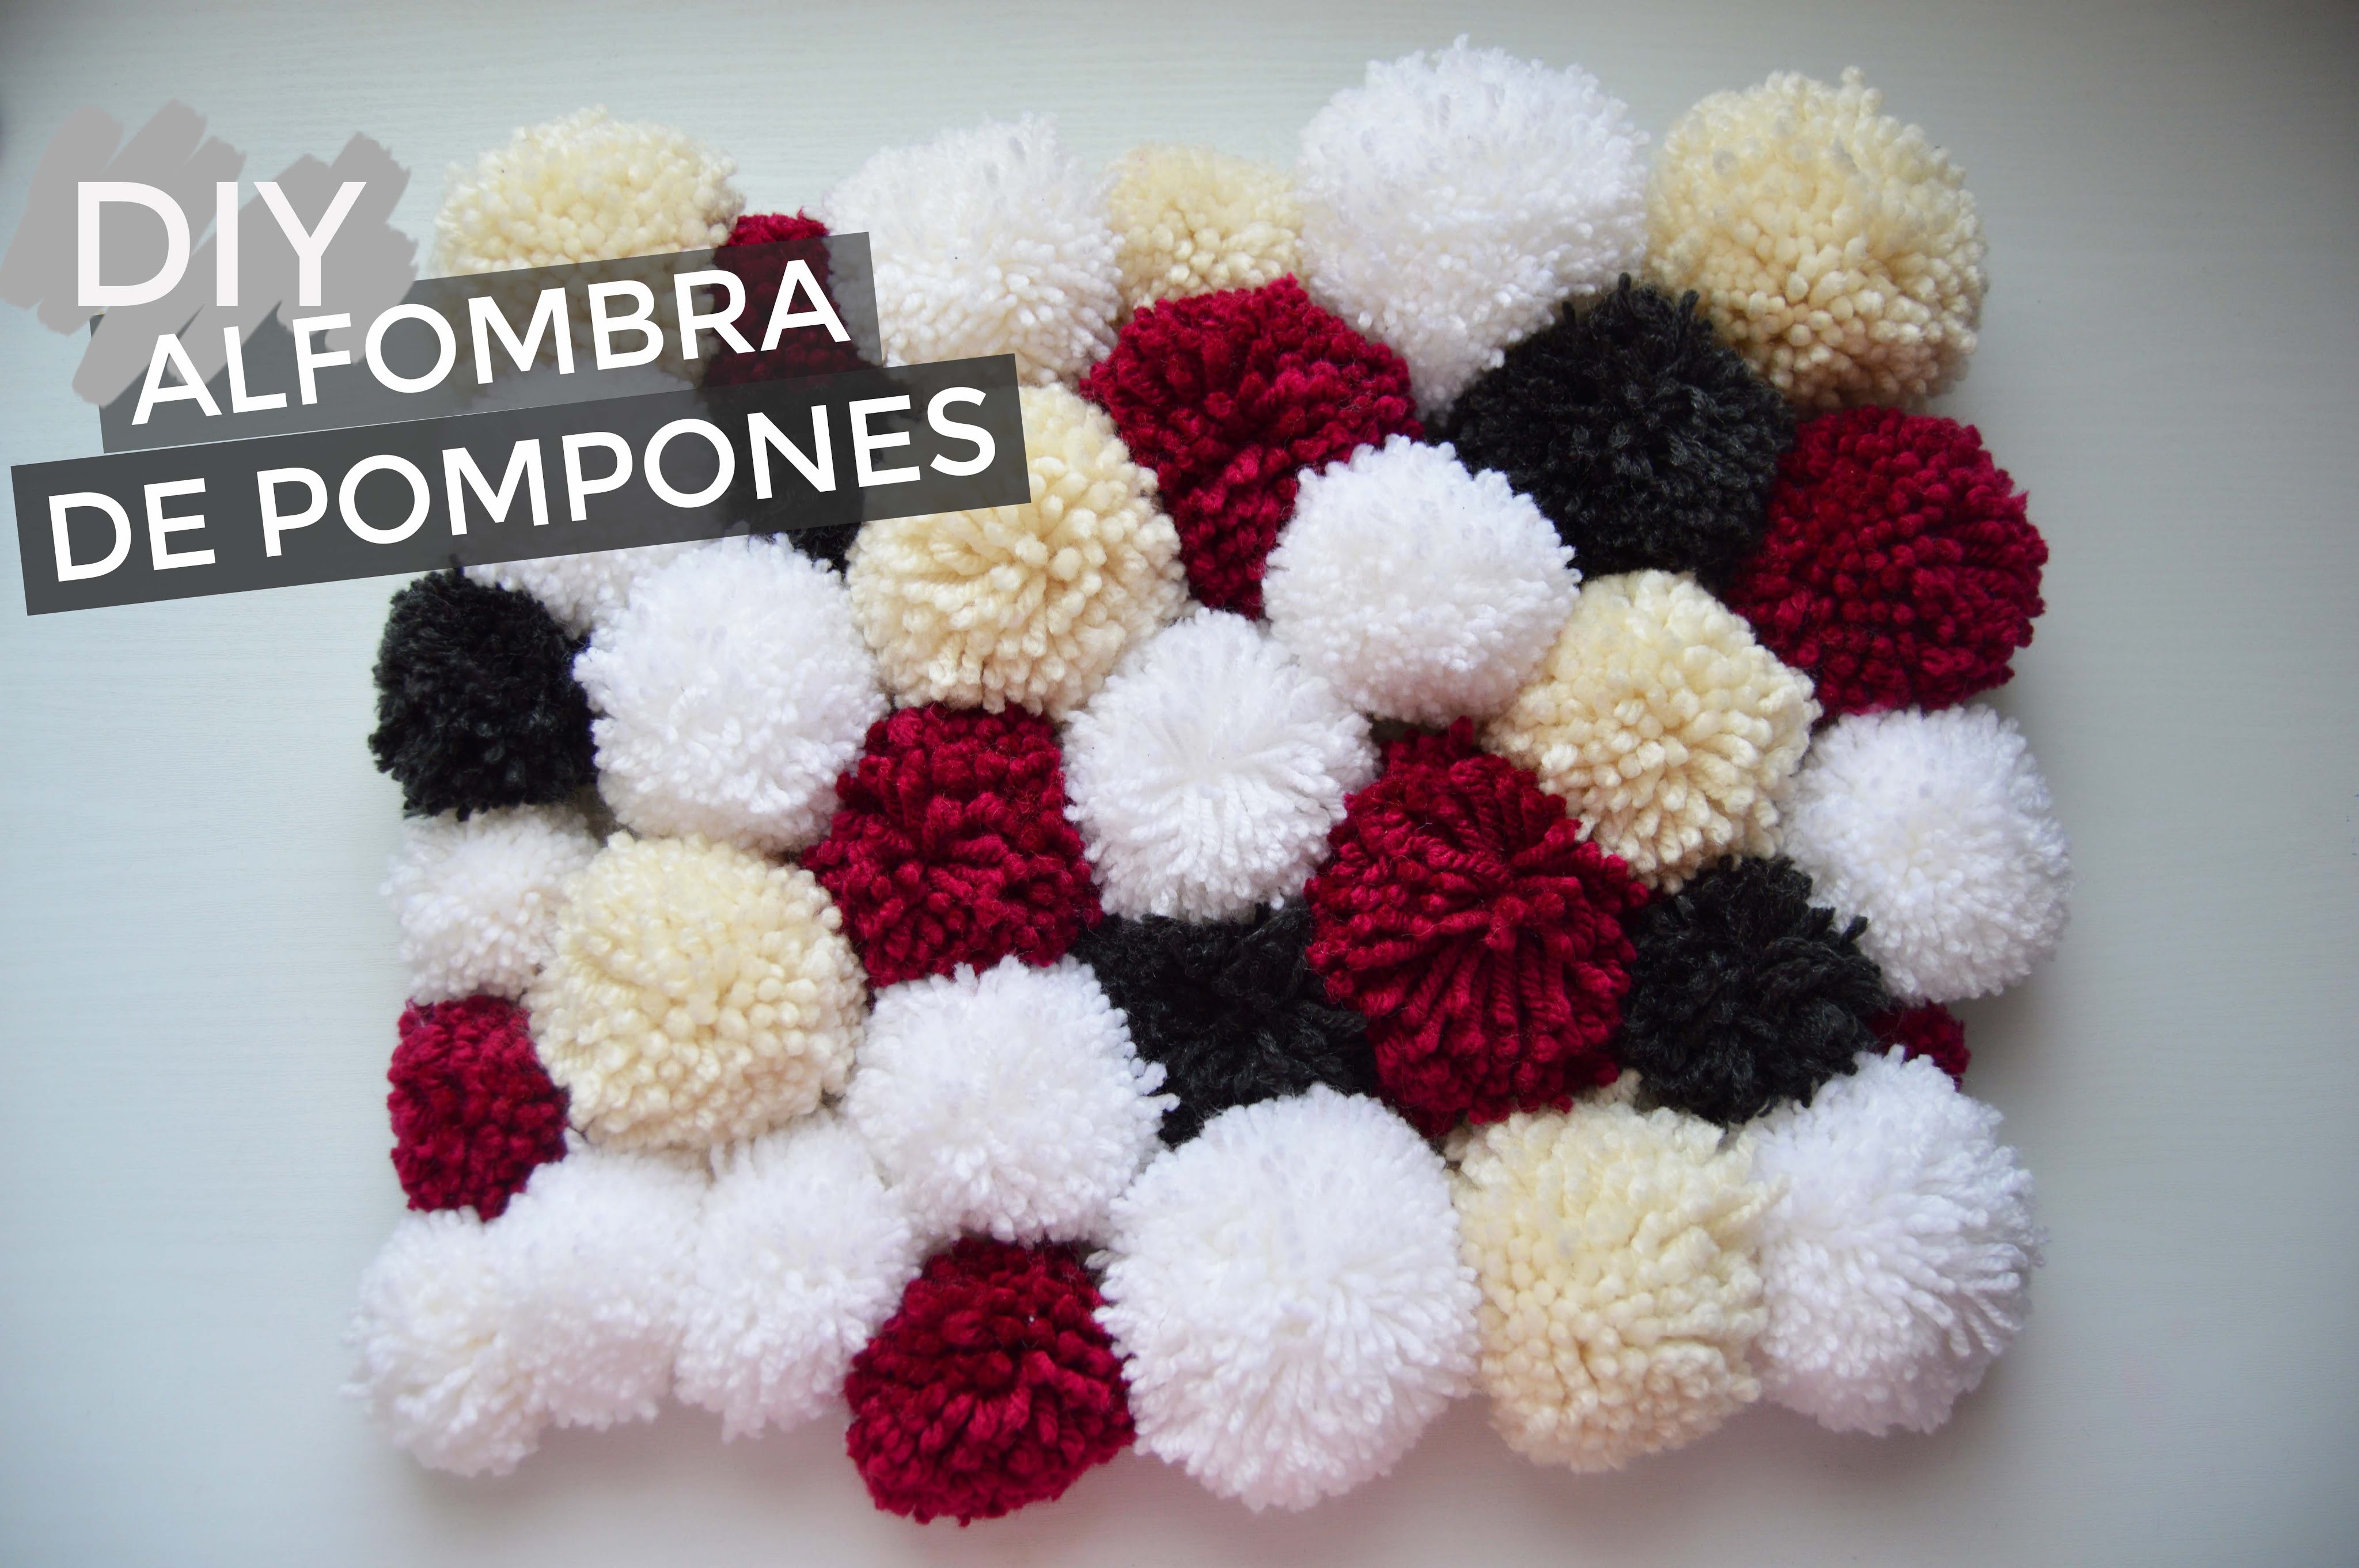 DIY alfombra de pompones (pompom rug)! | The White DIY